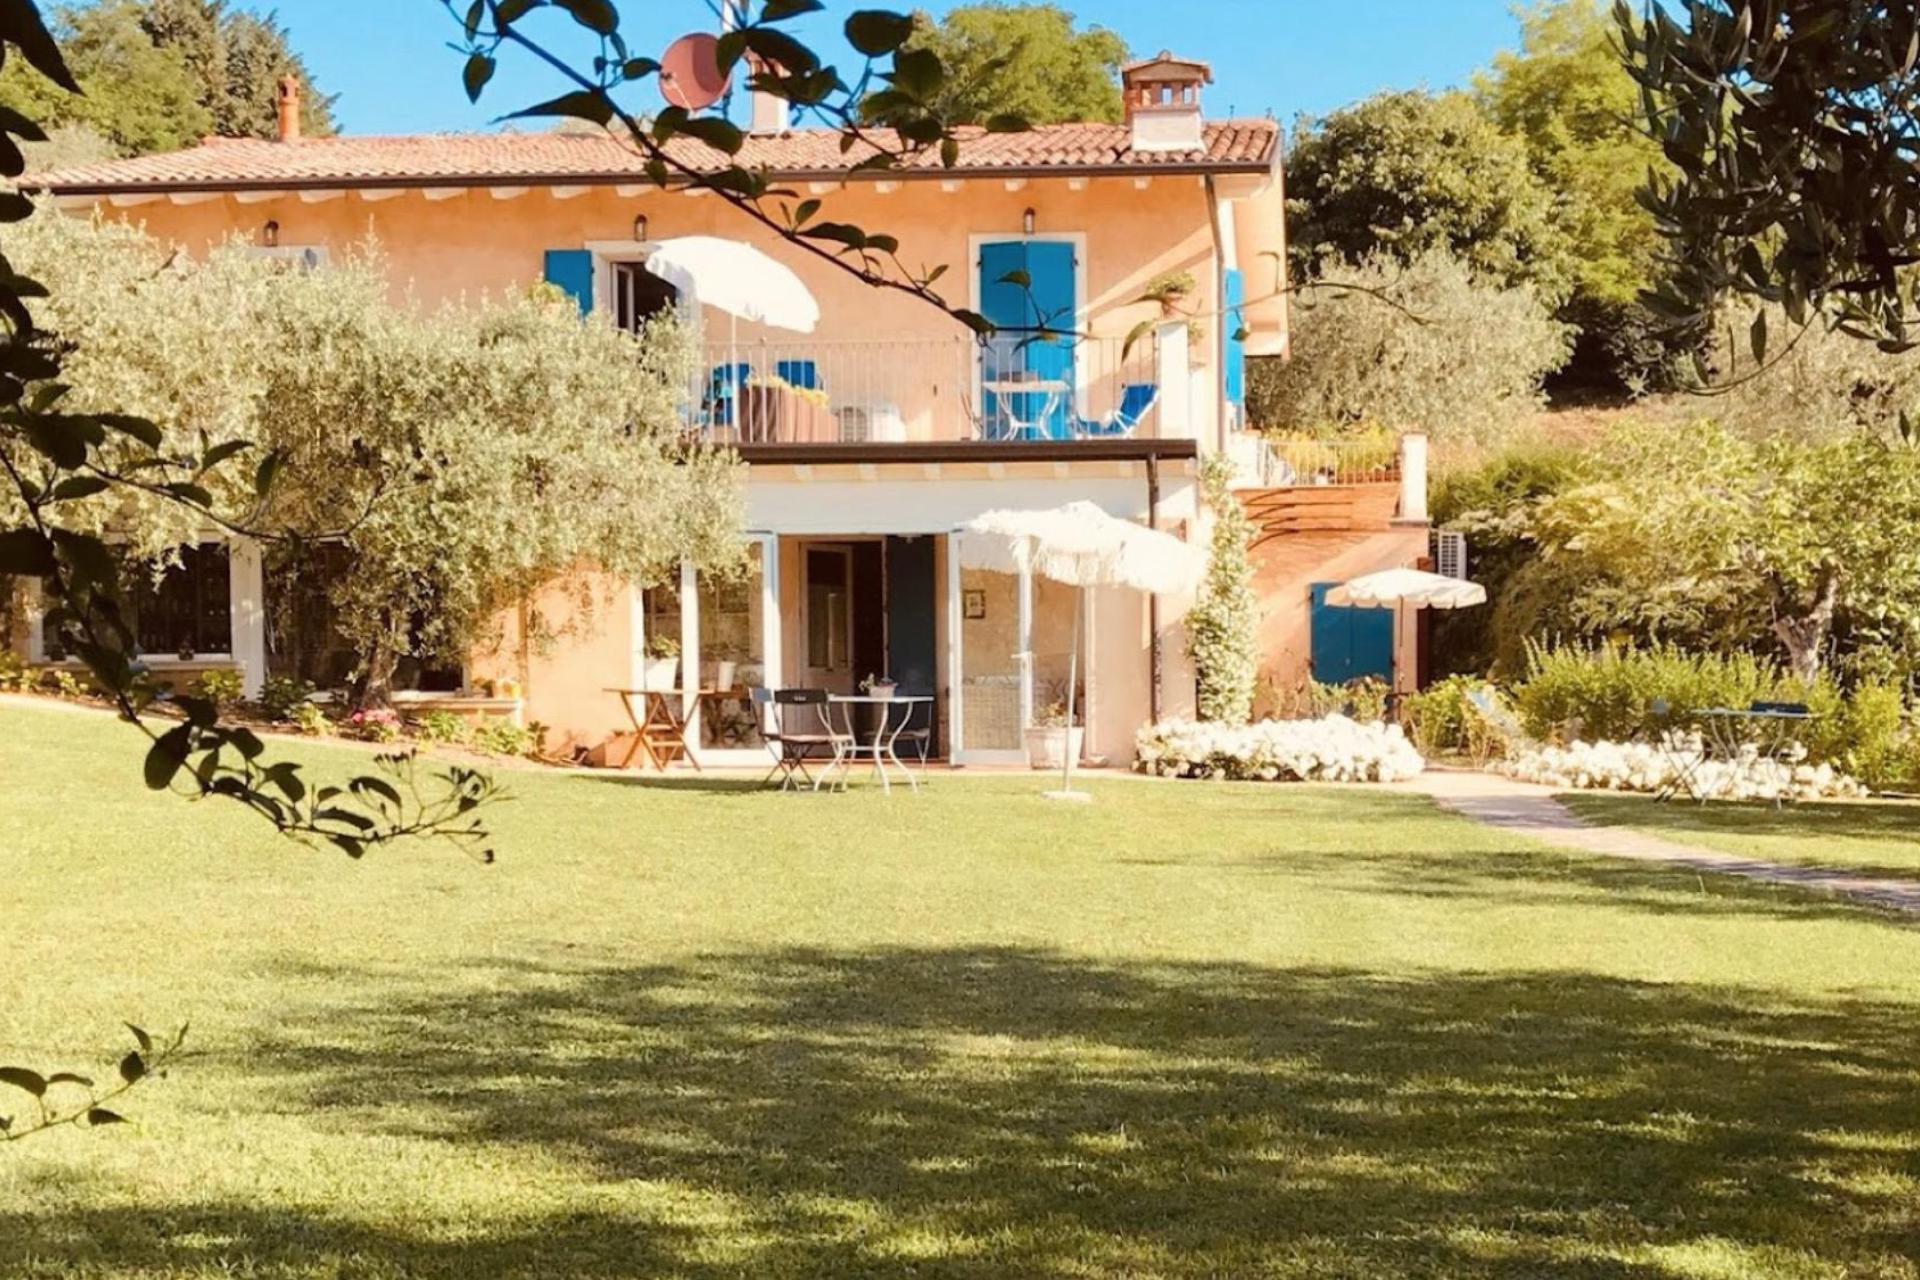 Agriturismo mit Ferienwohnungen Gardasee, klein und inmitten der Olivenbäume